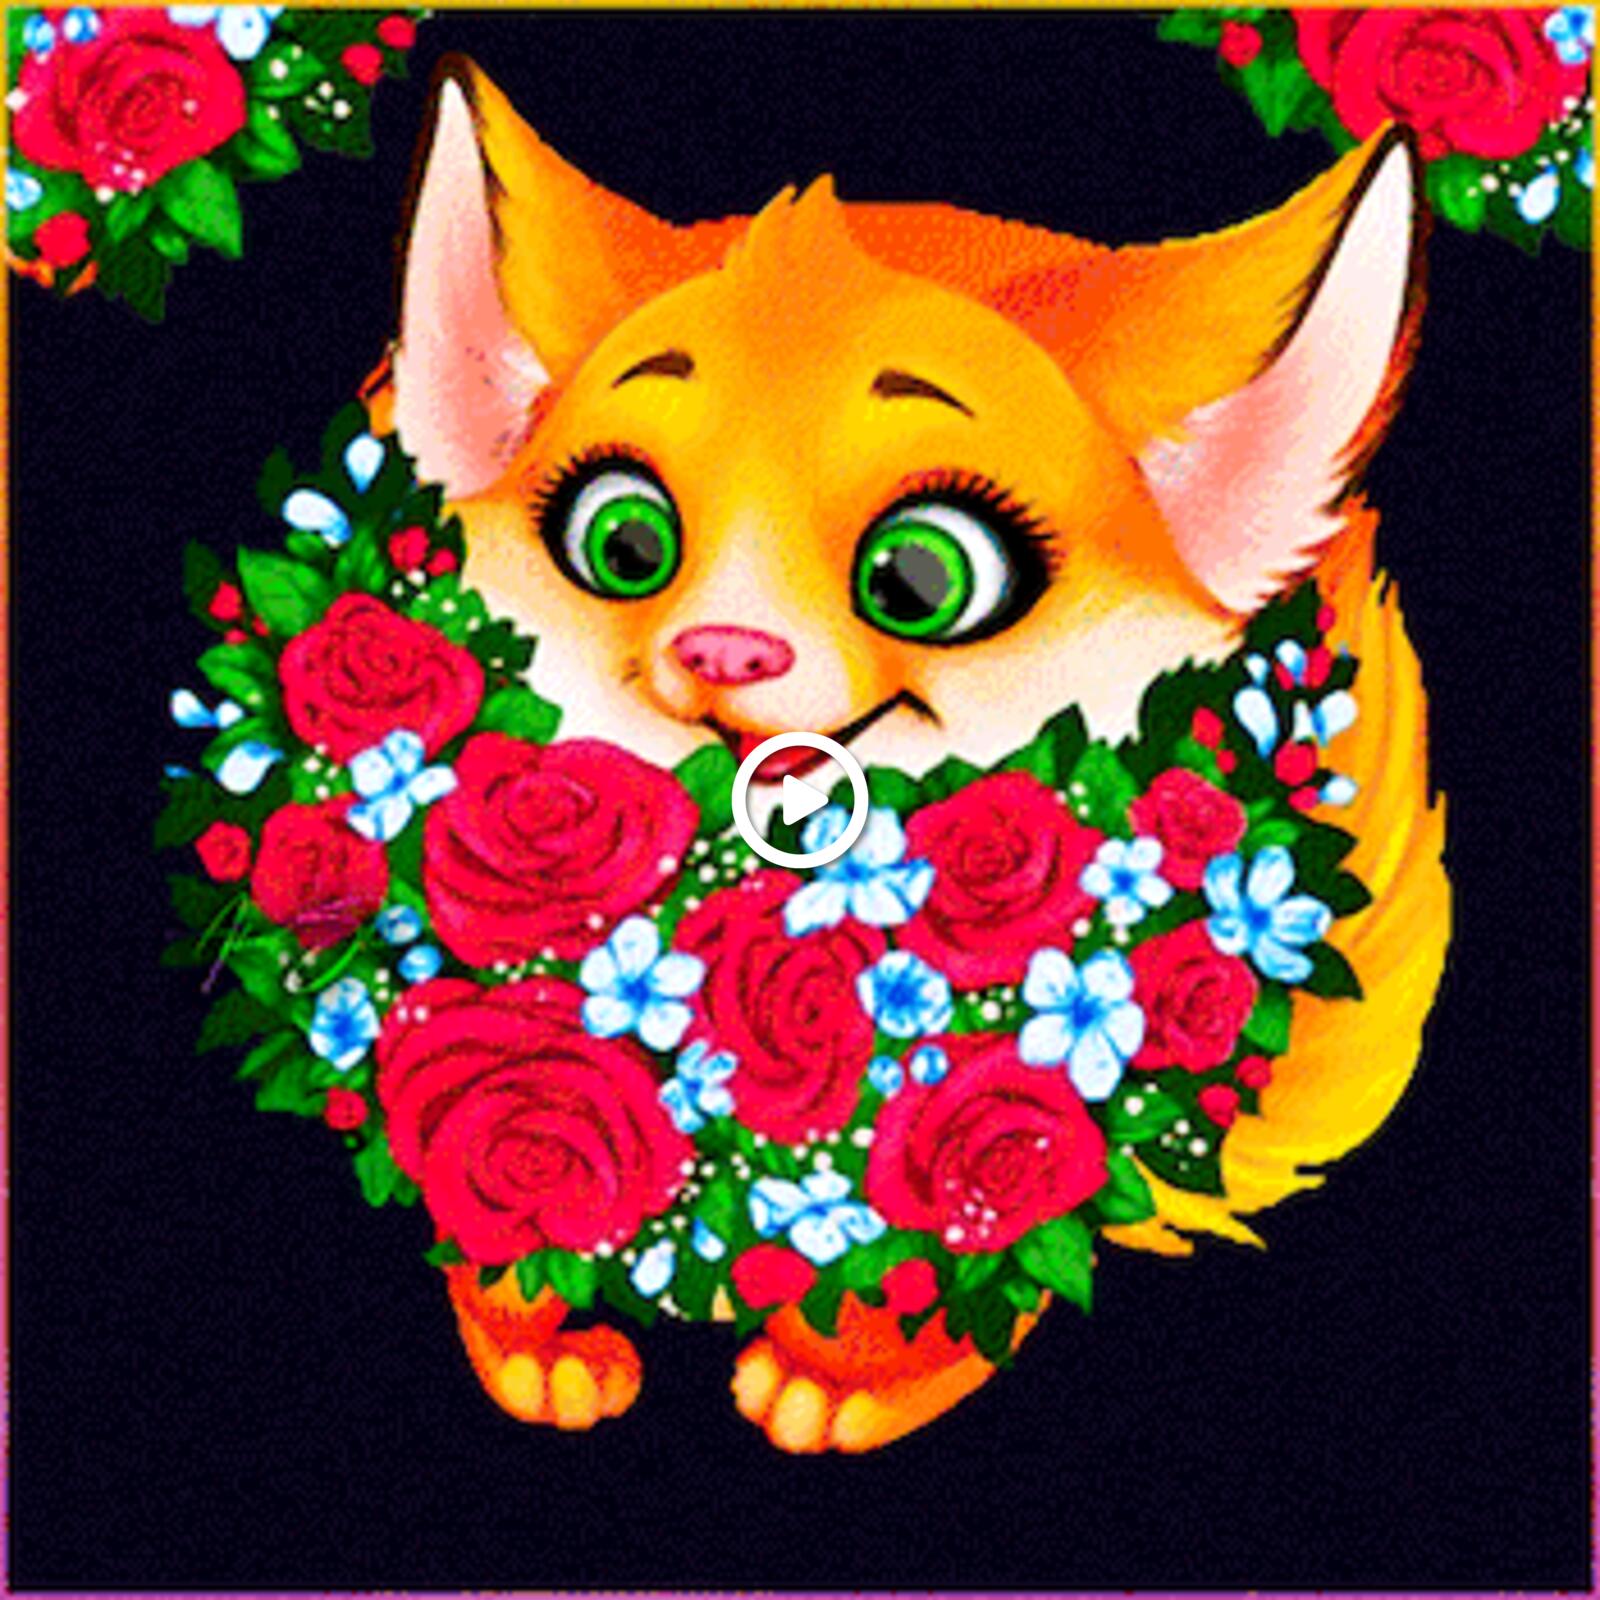 kit fox roses flowers